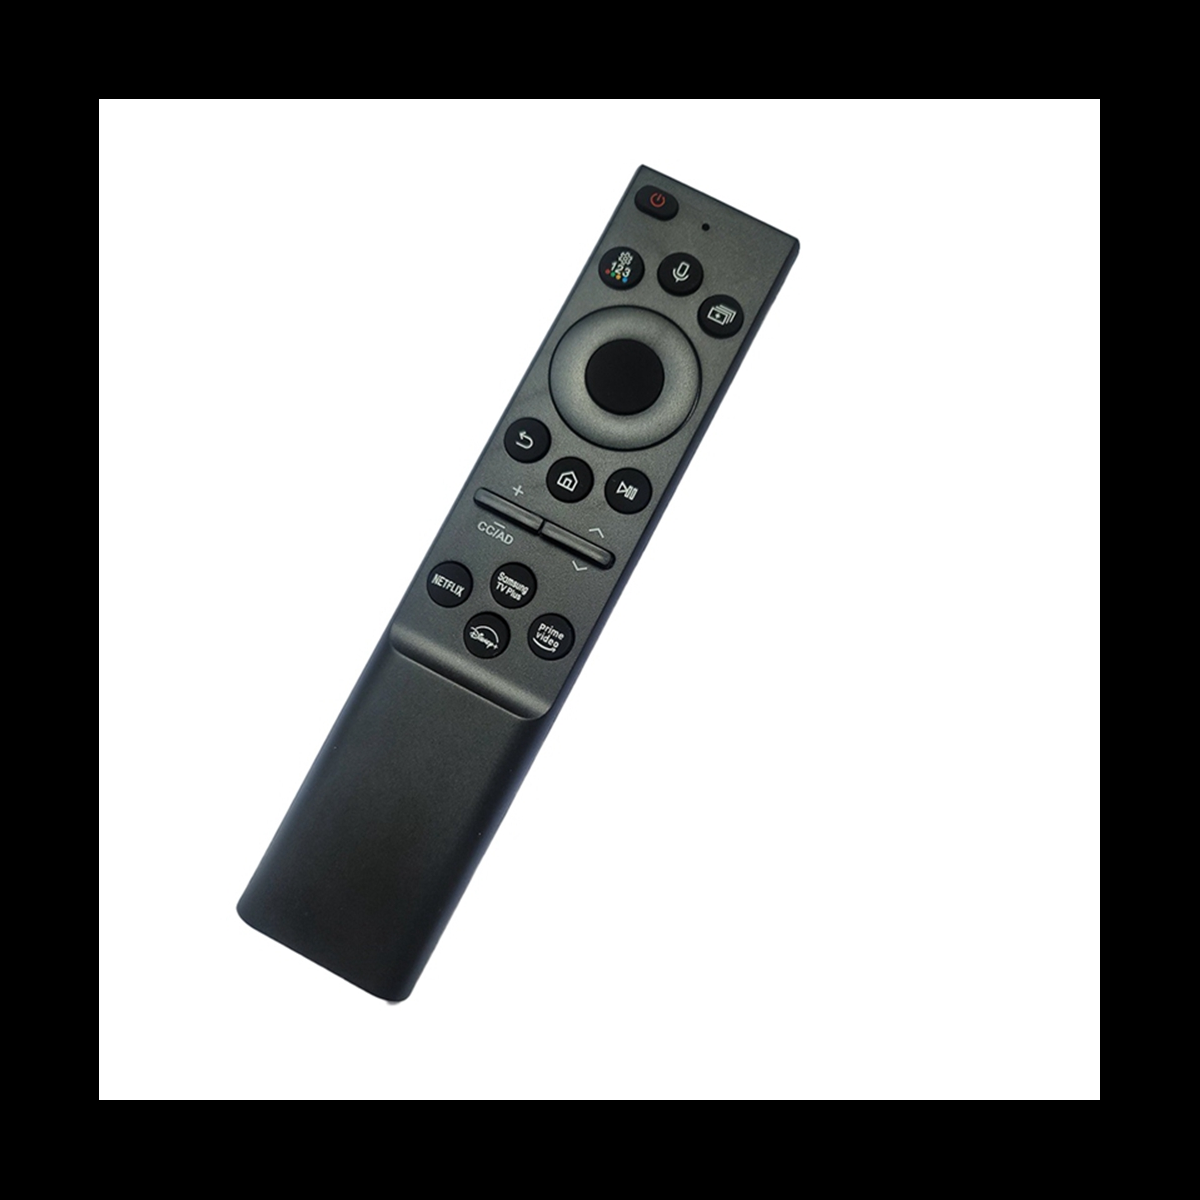  Control remoto por voz DR49WK B PE59CV de repuesto de 2ª  generación compatible con  TV,  TV Stick Box,  TV Cube  (1ª generación, 2ª generación)  TV Stick (2ª